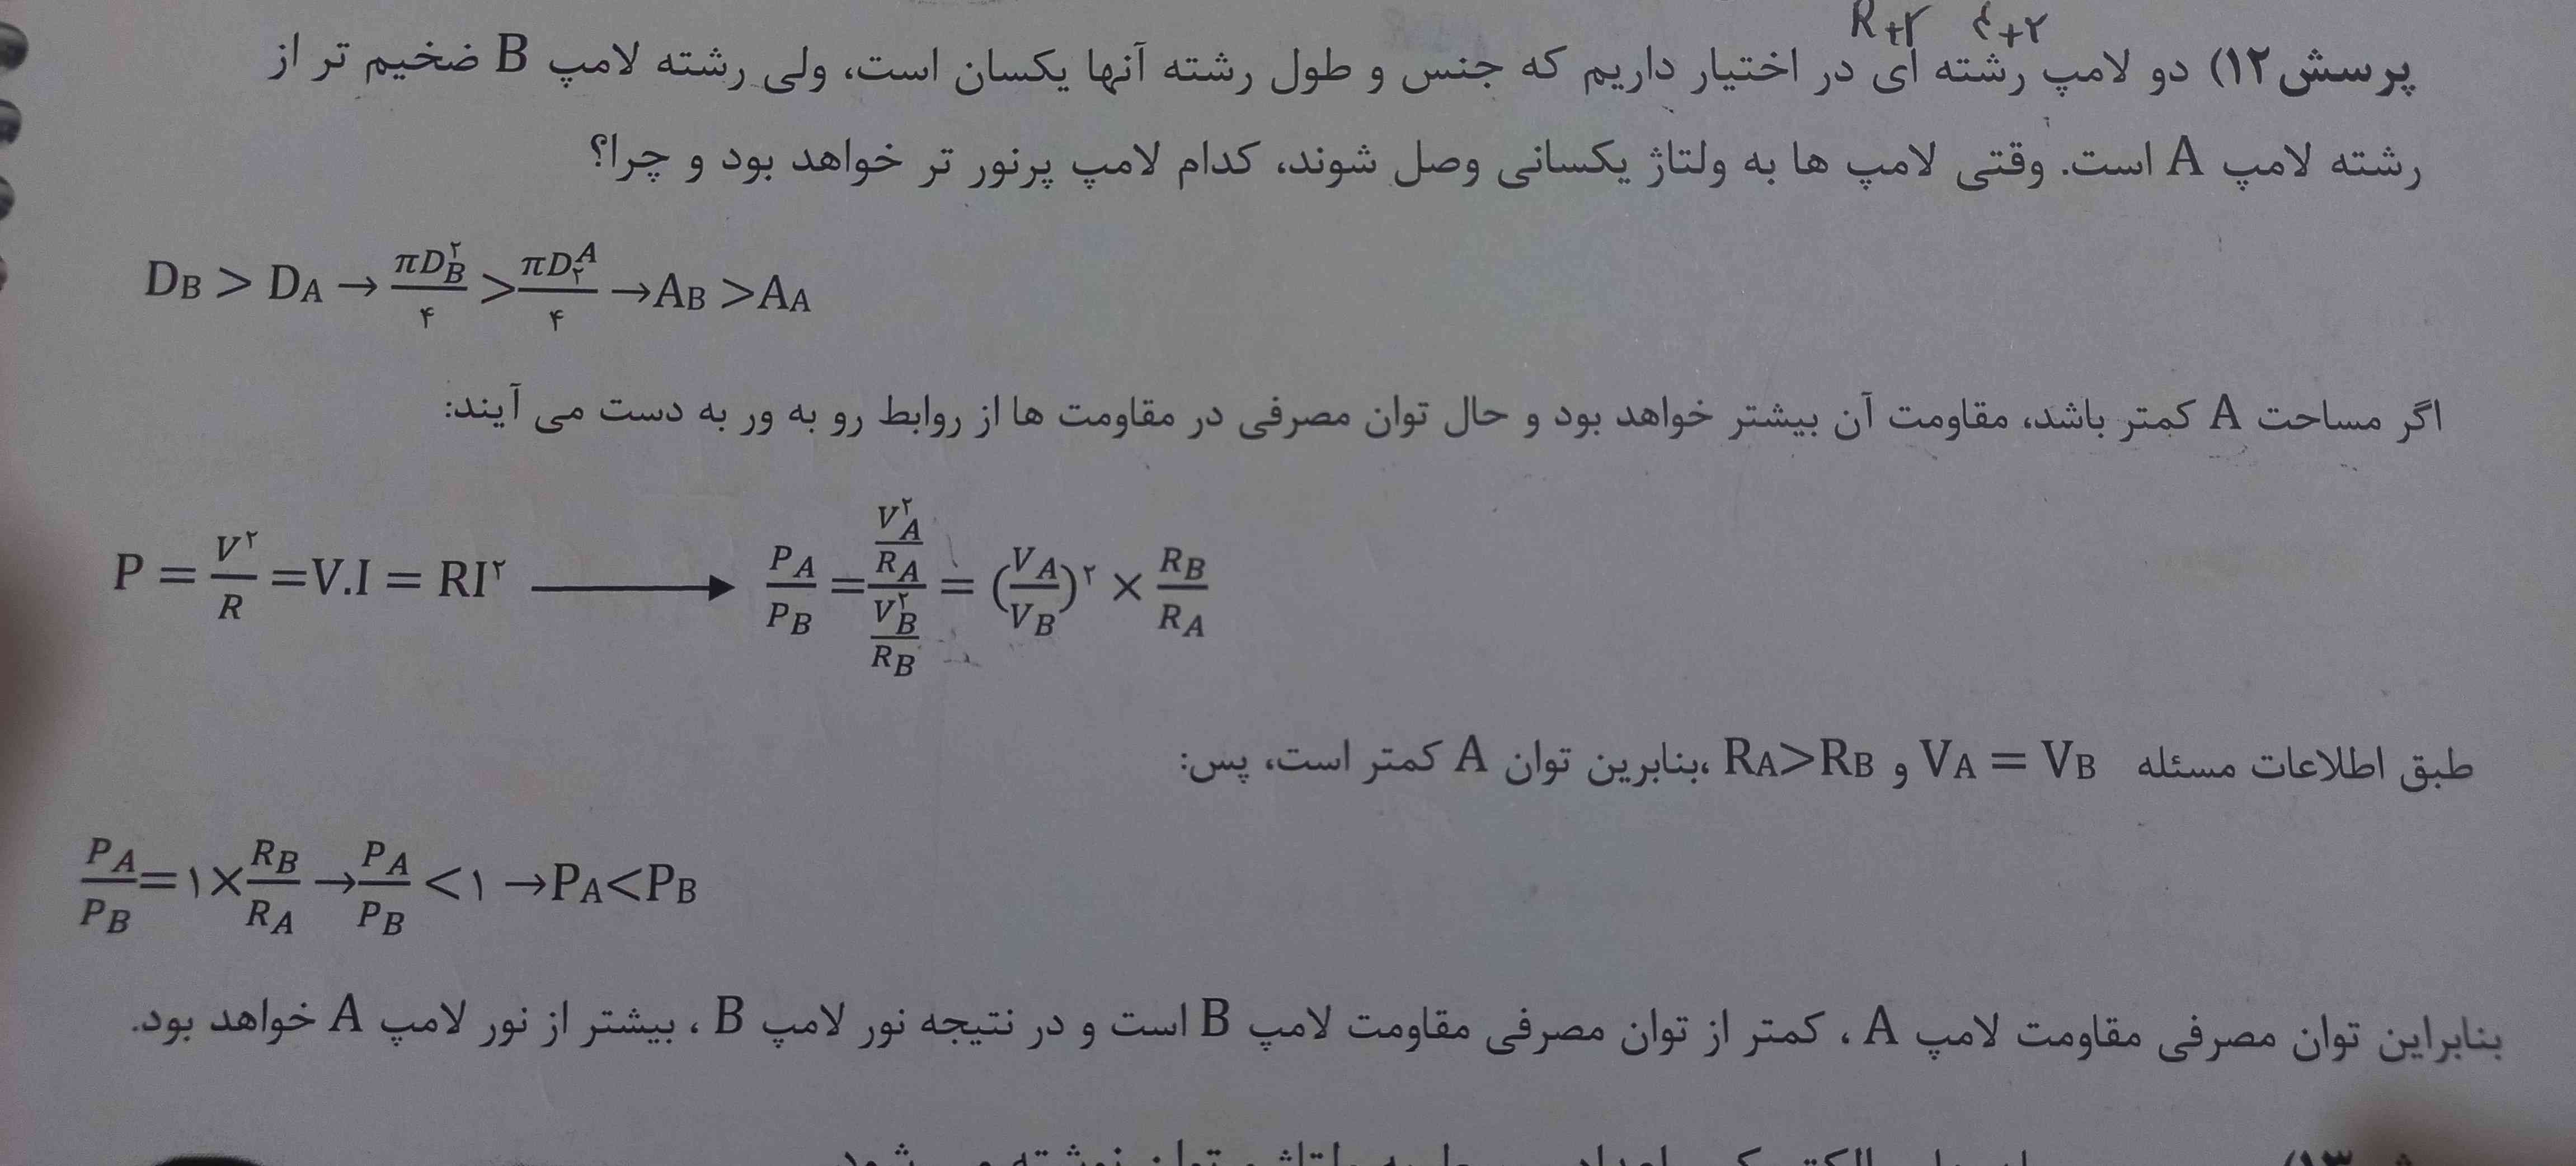 فیزیک یازدهم این پرسش رو کسی میتونه واسم توضیح بده لطفا